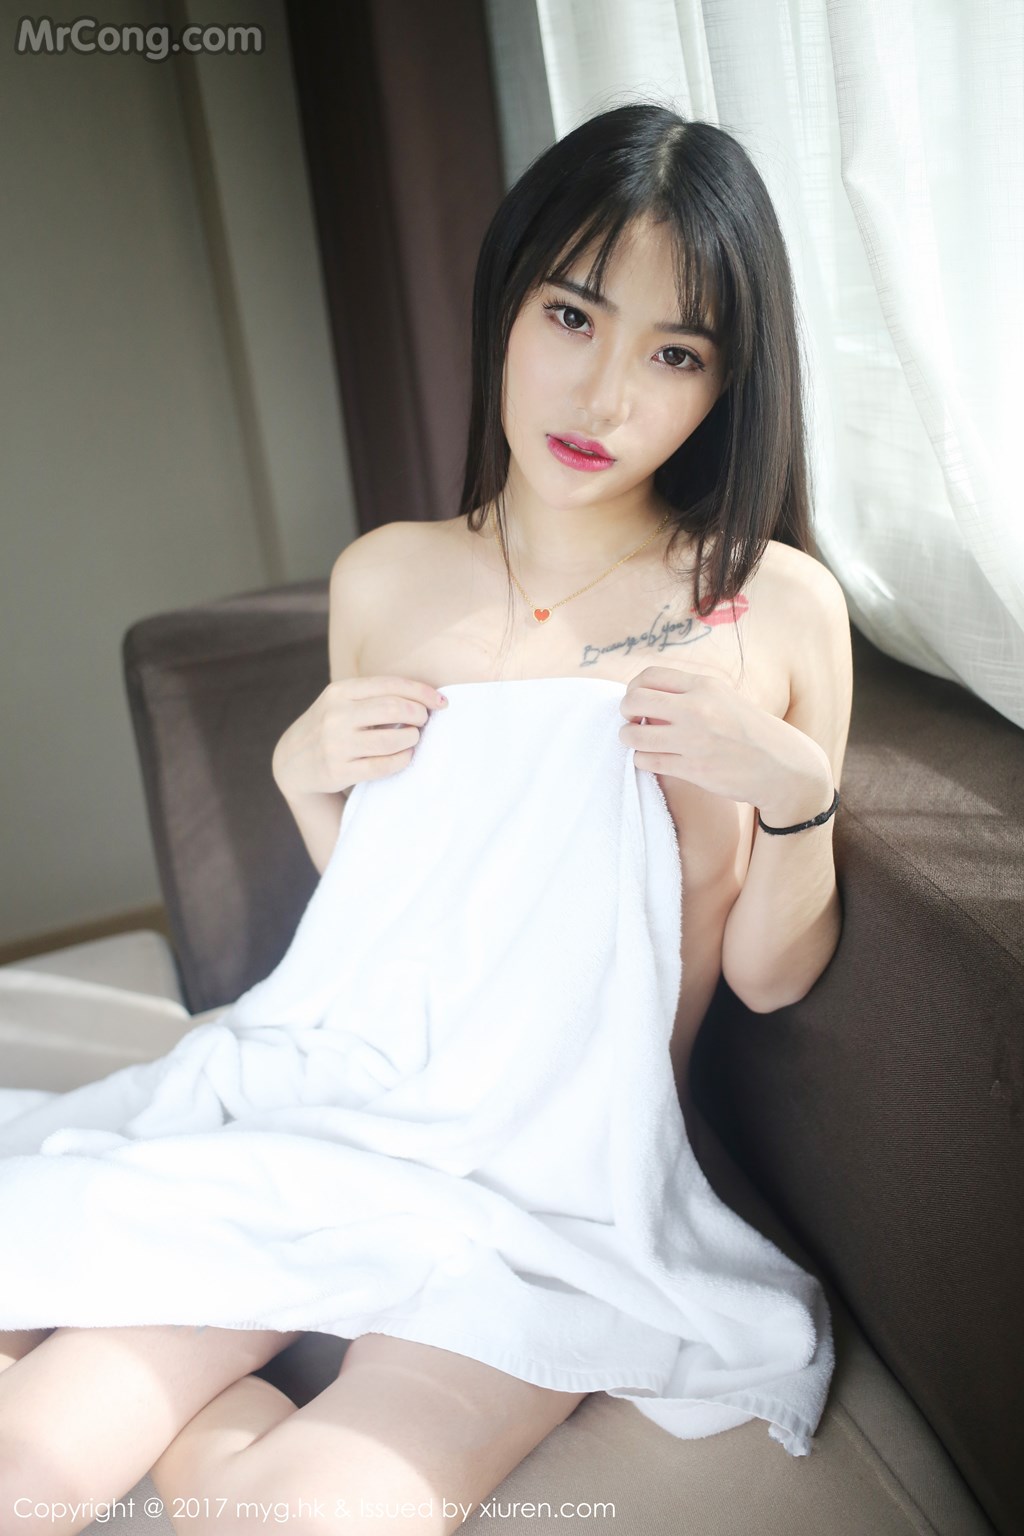 MyGirl Vol. 522: Model Yang Jie (杨洁 linda) (42 photos) photo 2-12